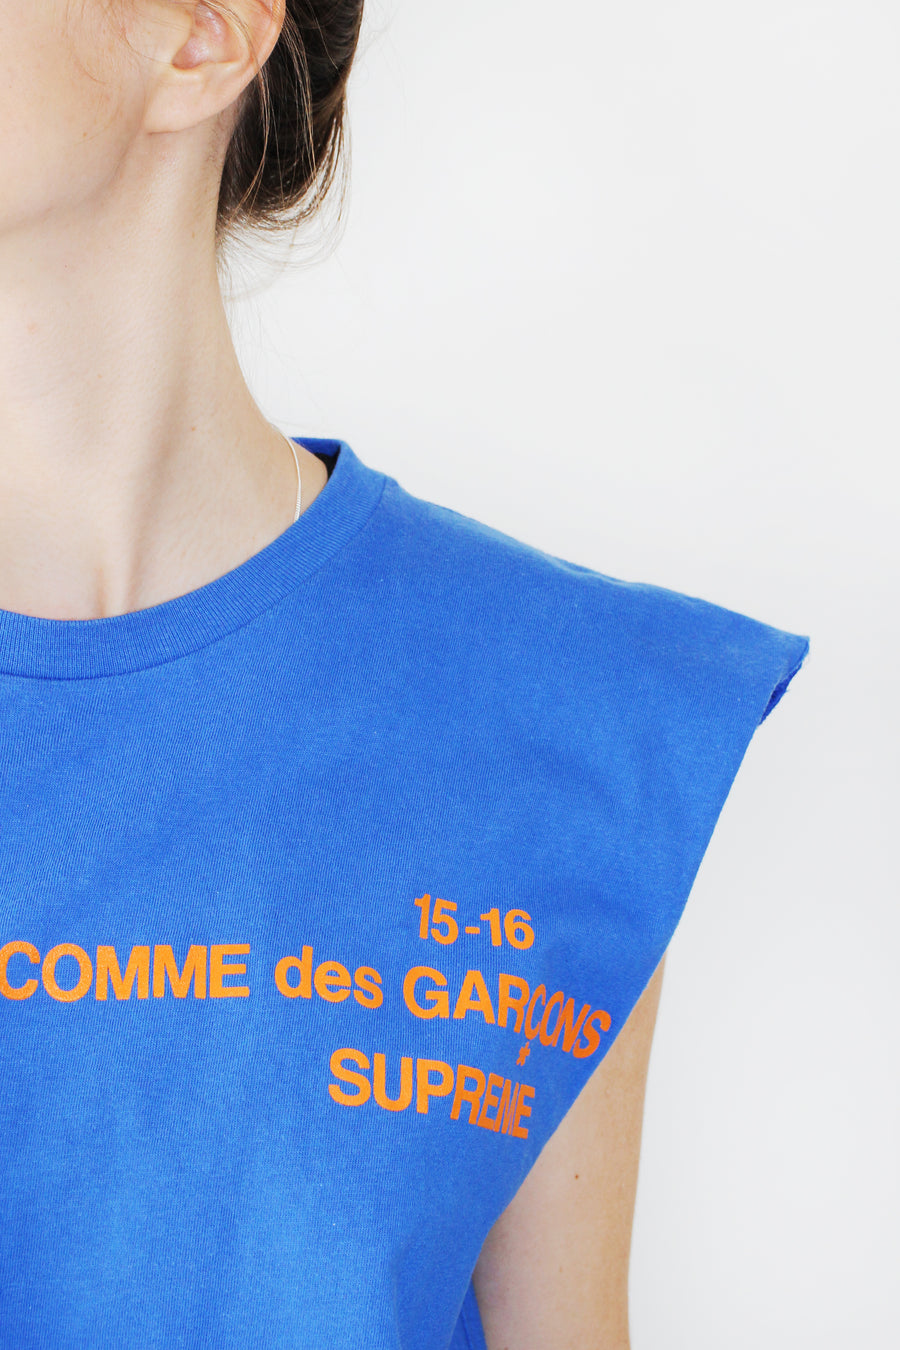 SUPREME x COMME DES GARCONS Shirt